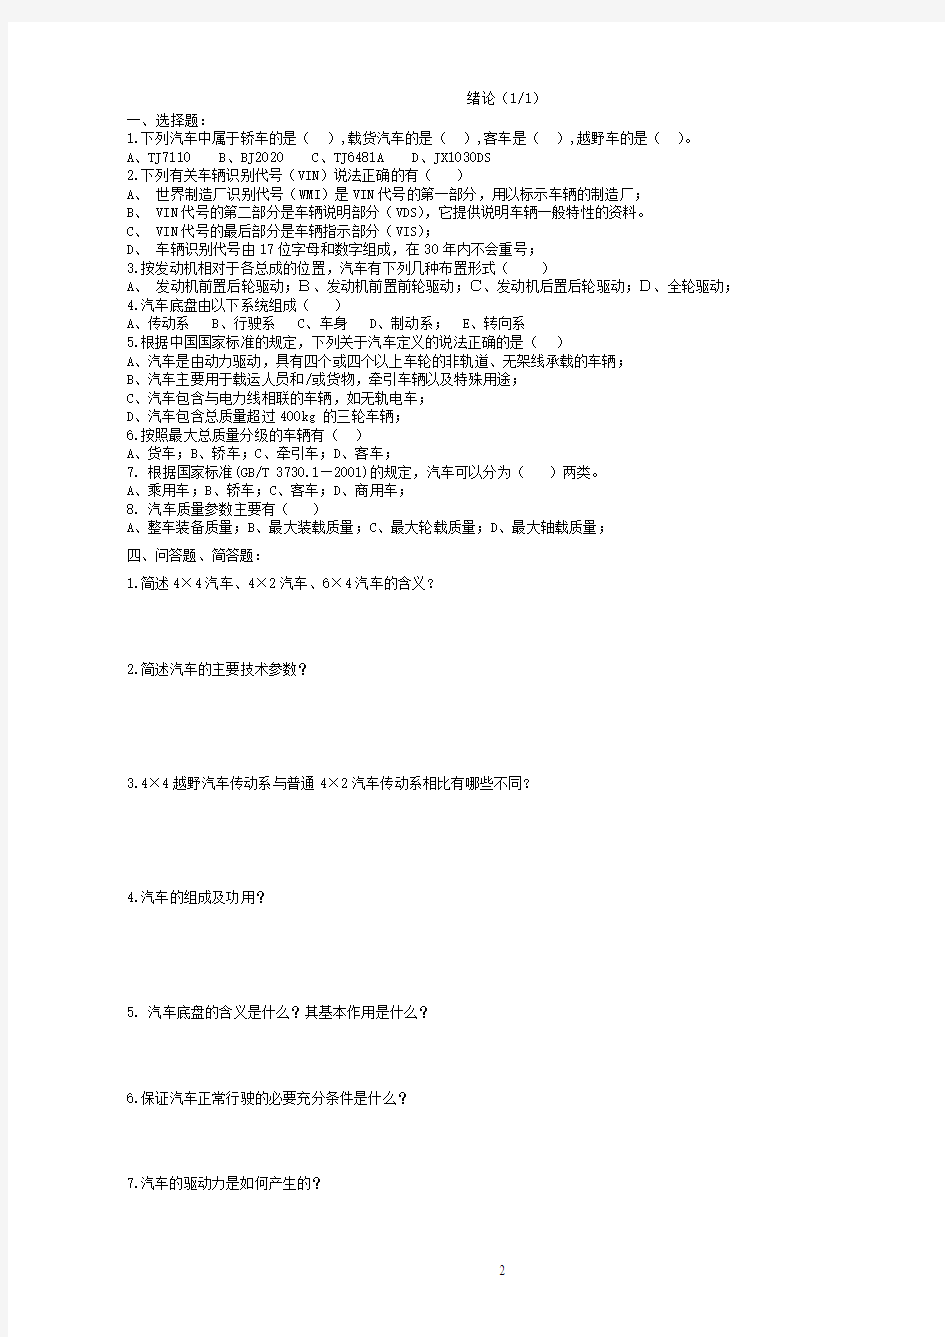 20111218汽车构造练习题集(成都学院)-打印无答案解析